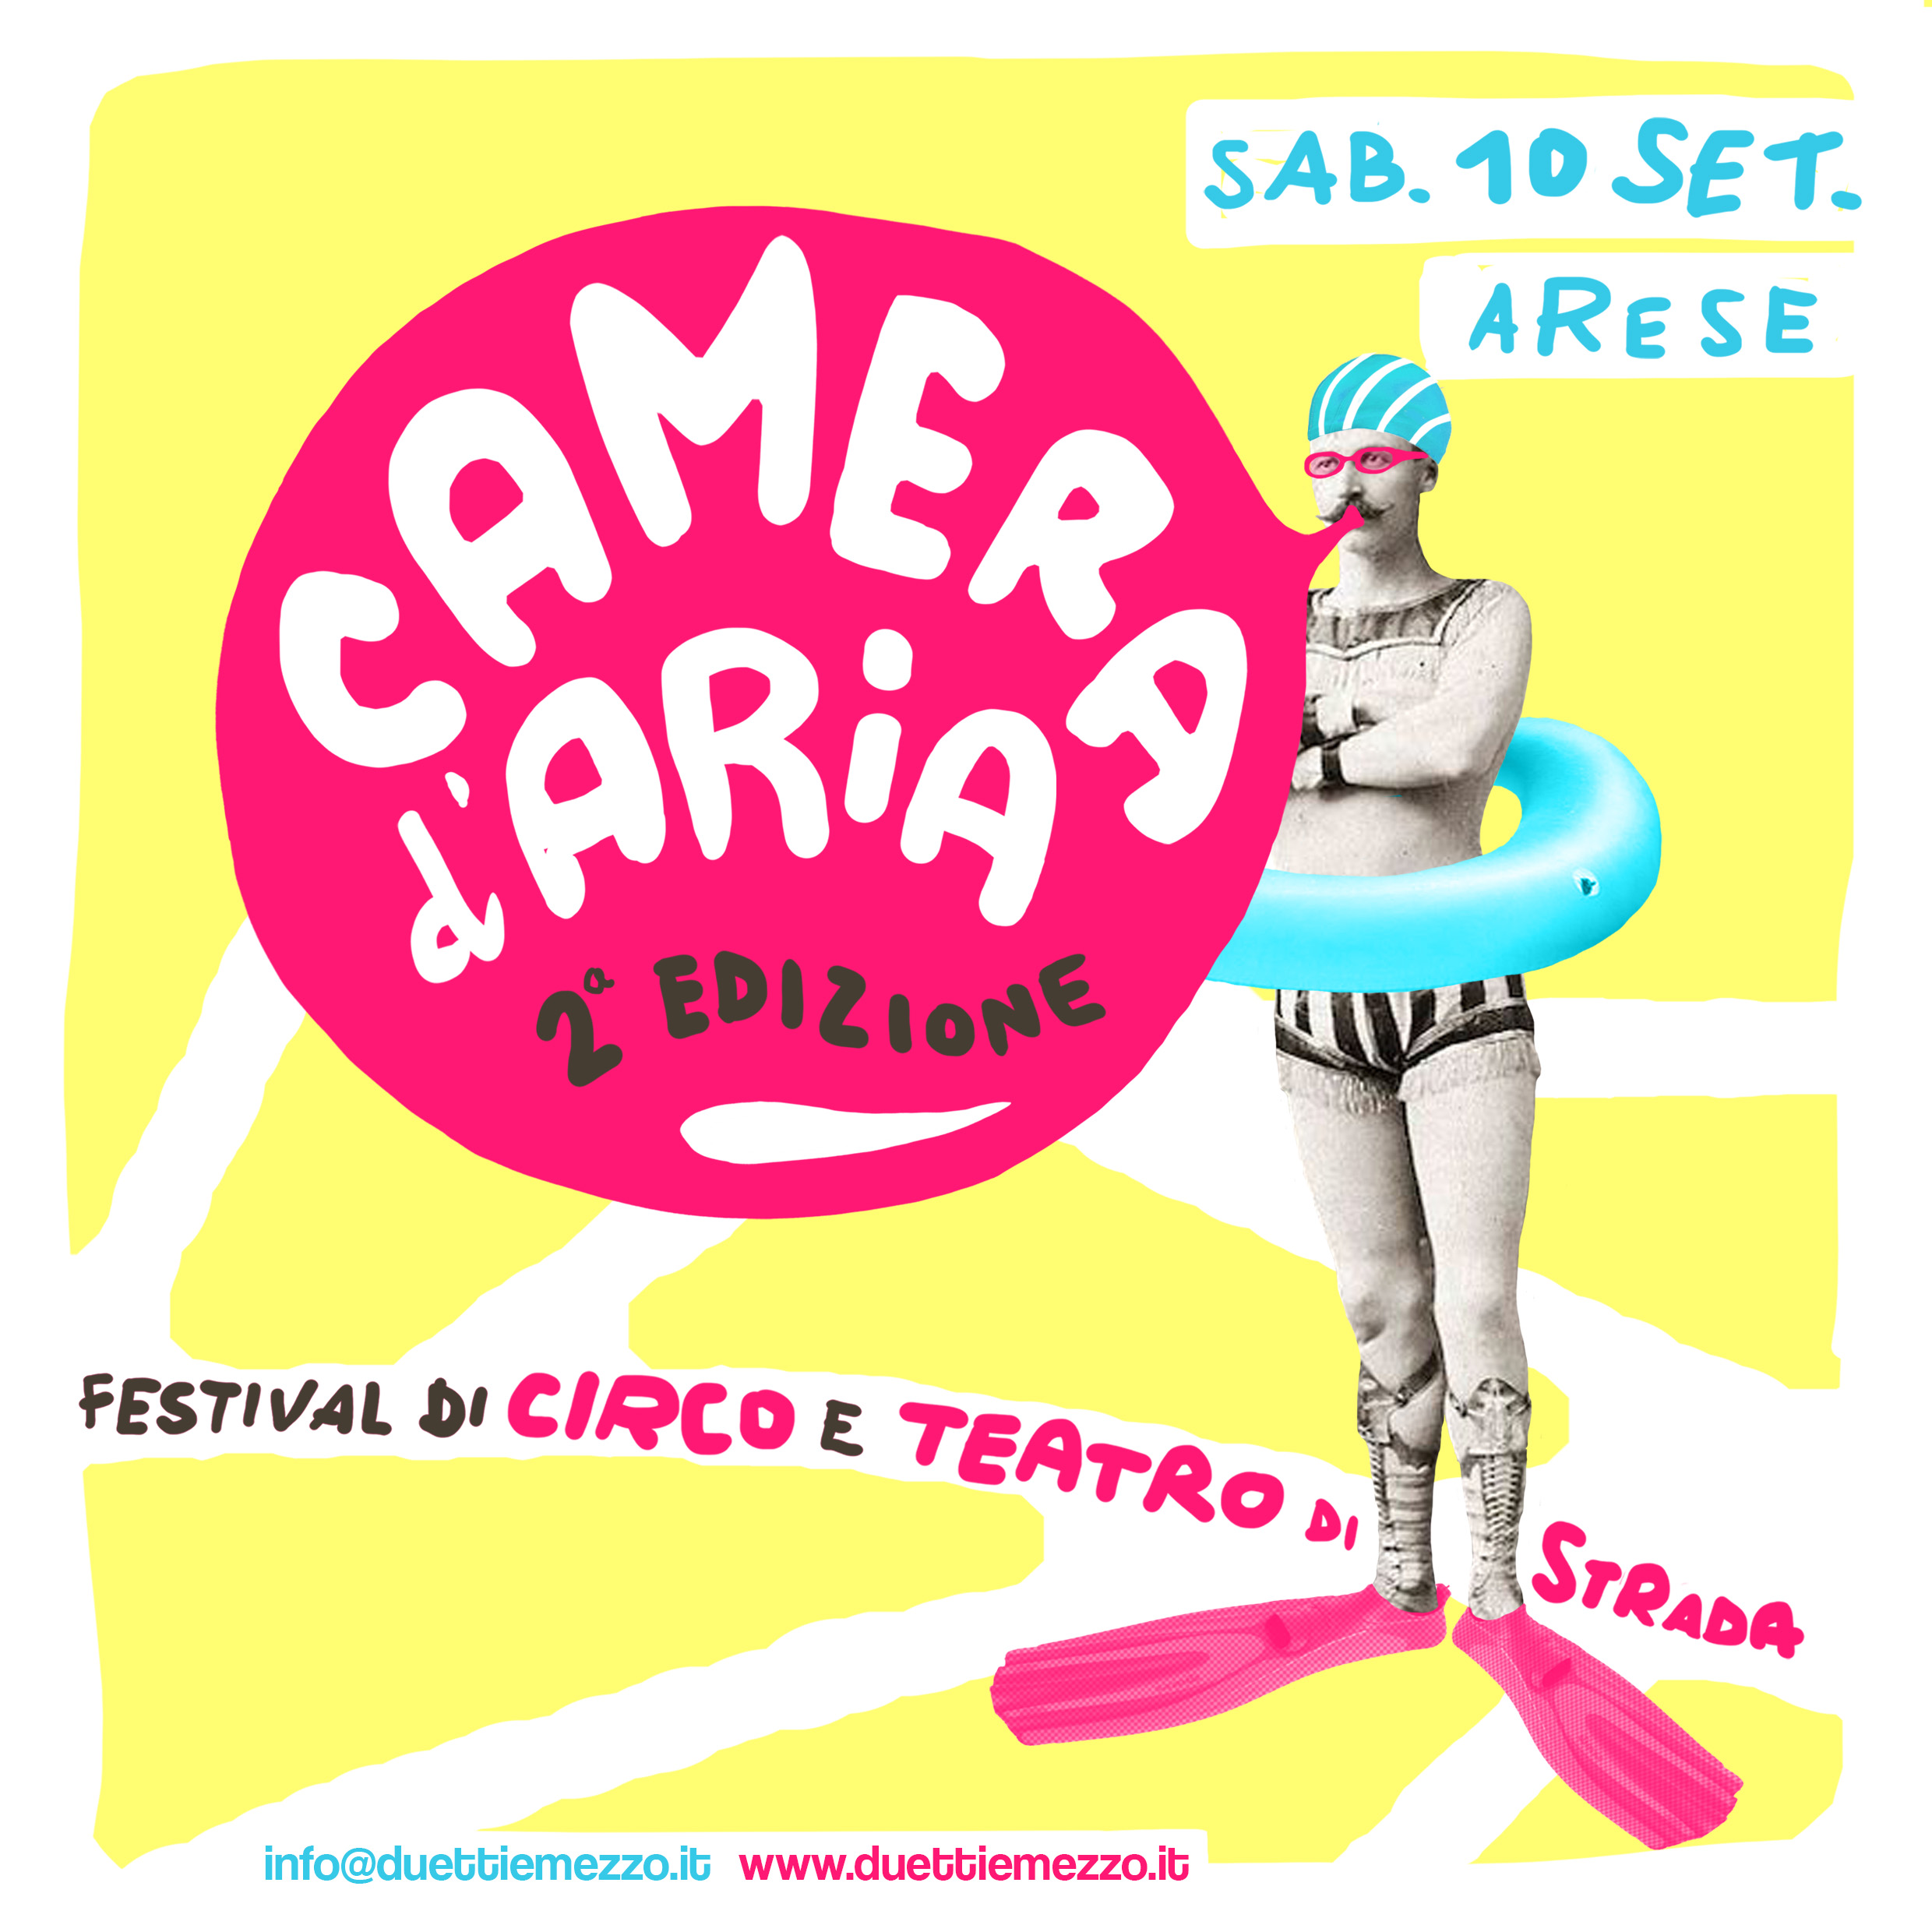 Camera d’aria – Festival di Circo e Teatro di Strada